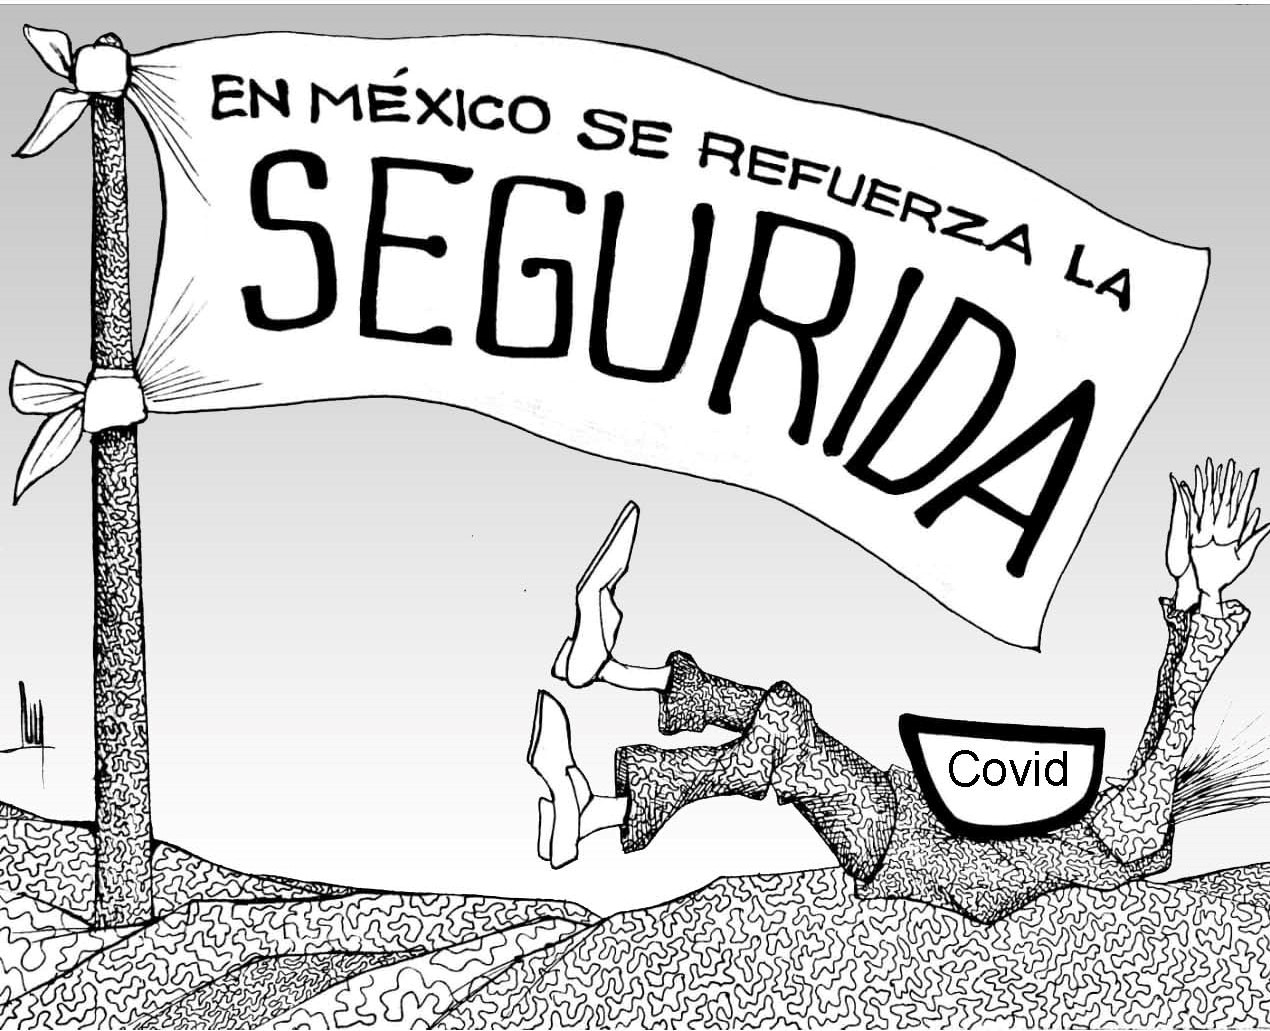 Seguridad a la mexicana